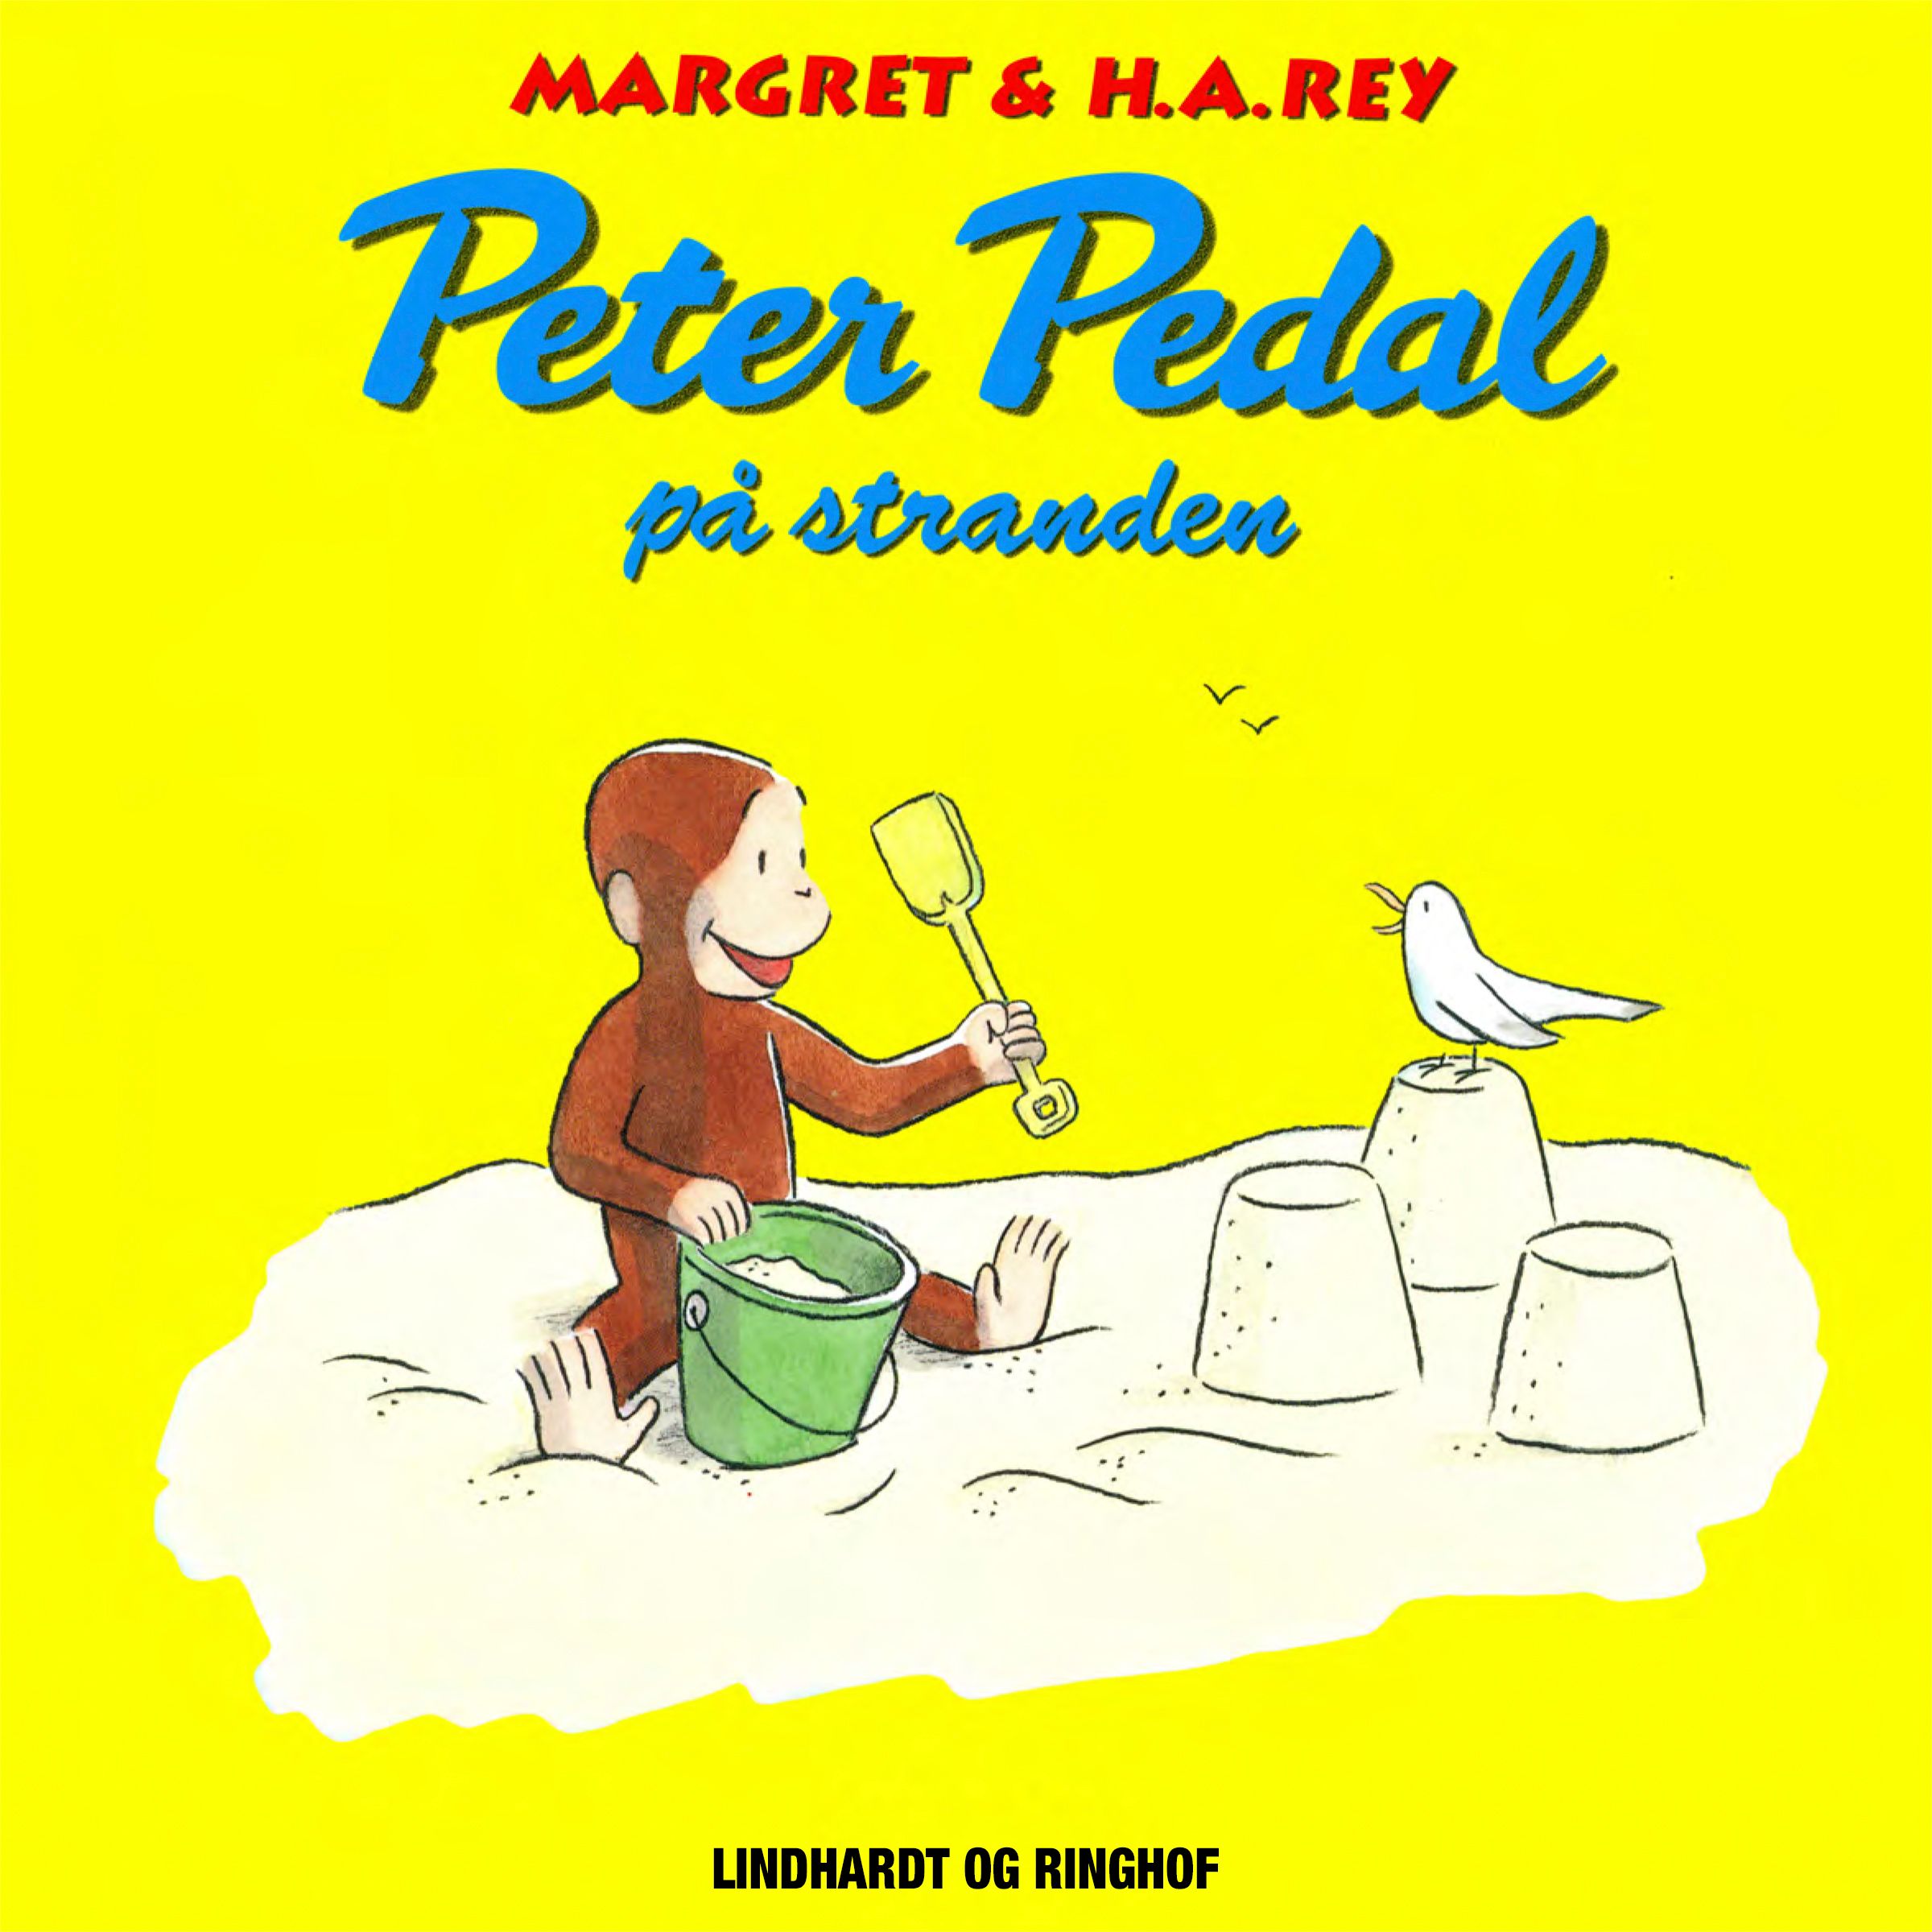 Peter Pedal på stranden, audiobook by H.a. Rey